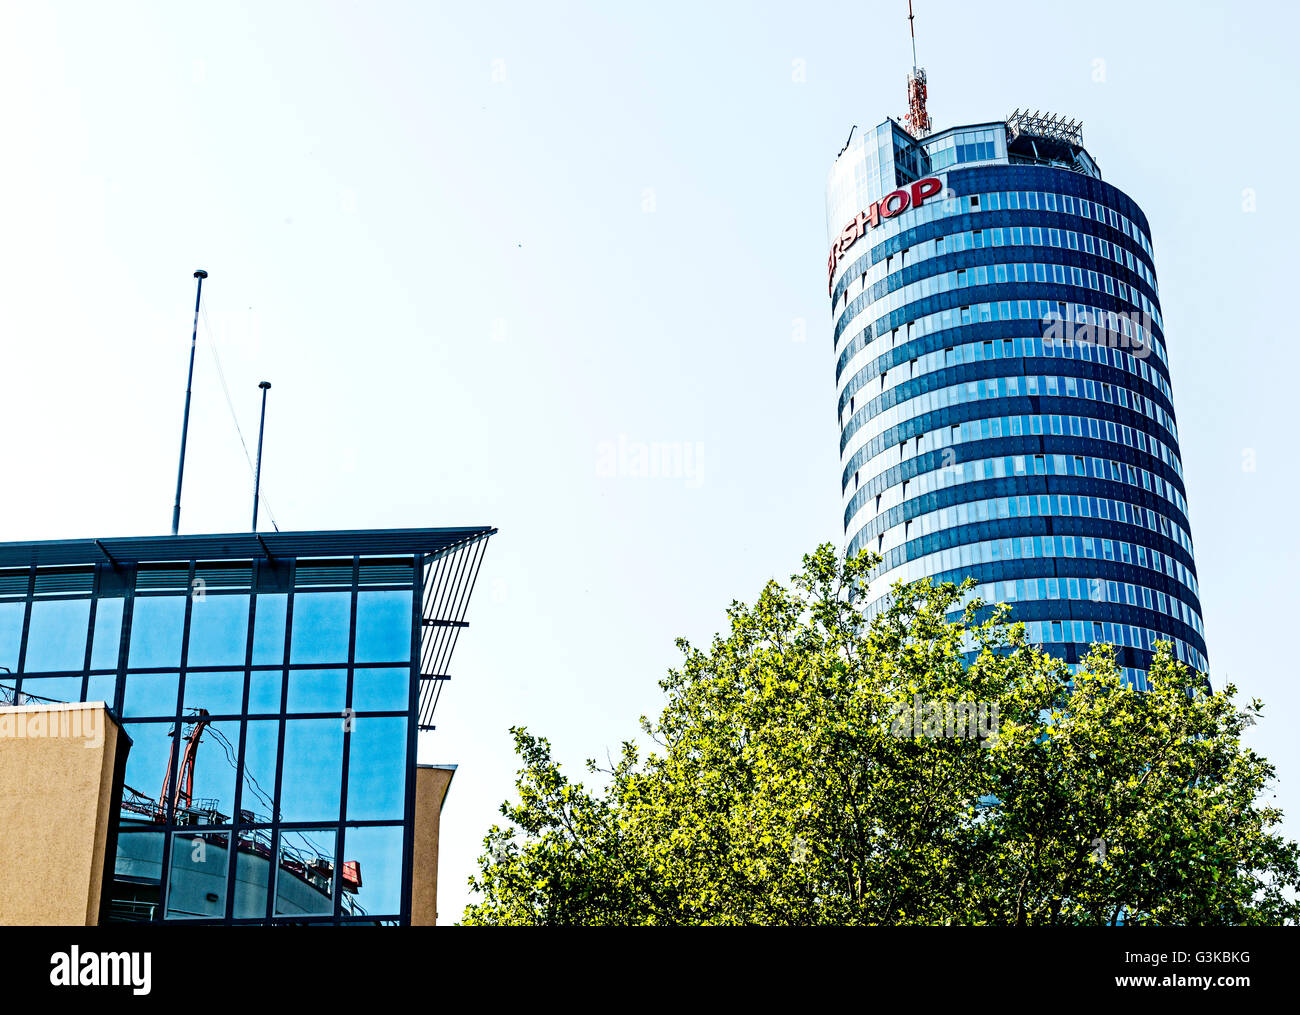 Jena, Germany - office tower 'Jentower'; Büroturm in Jena Stock Photo